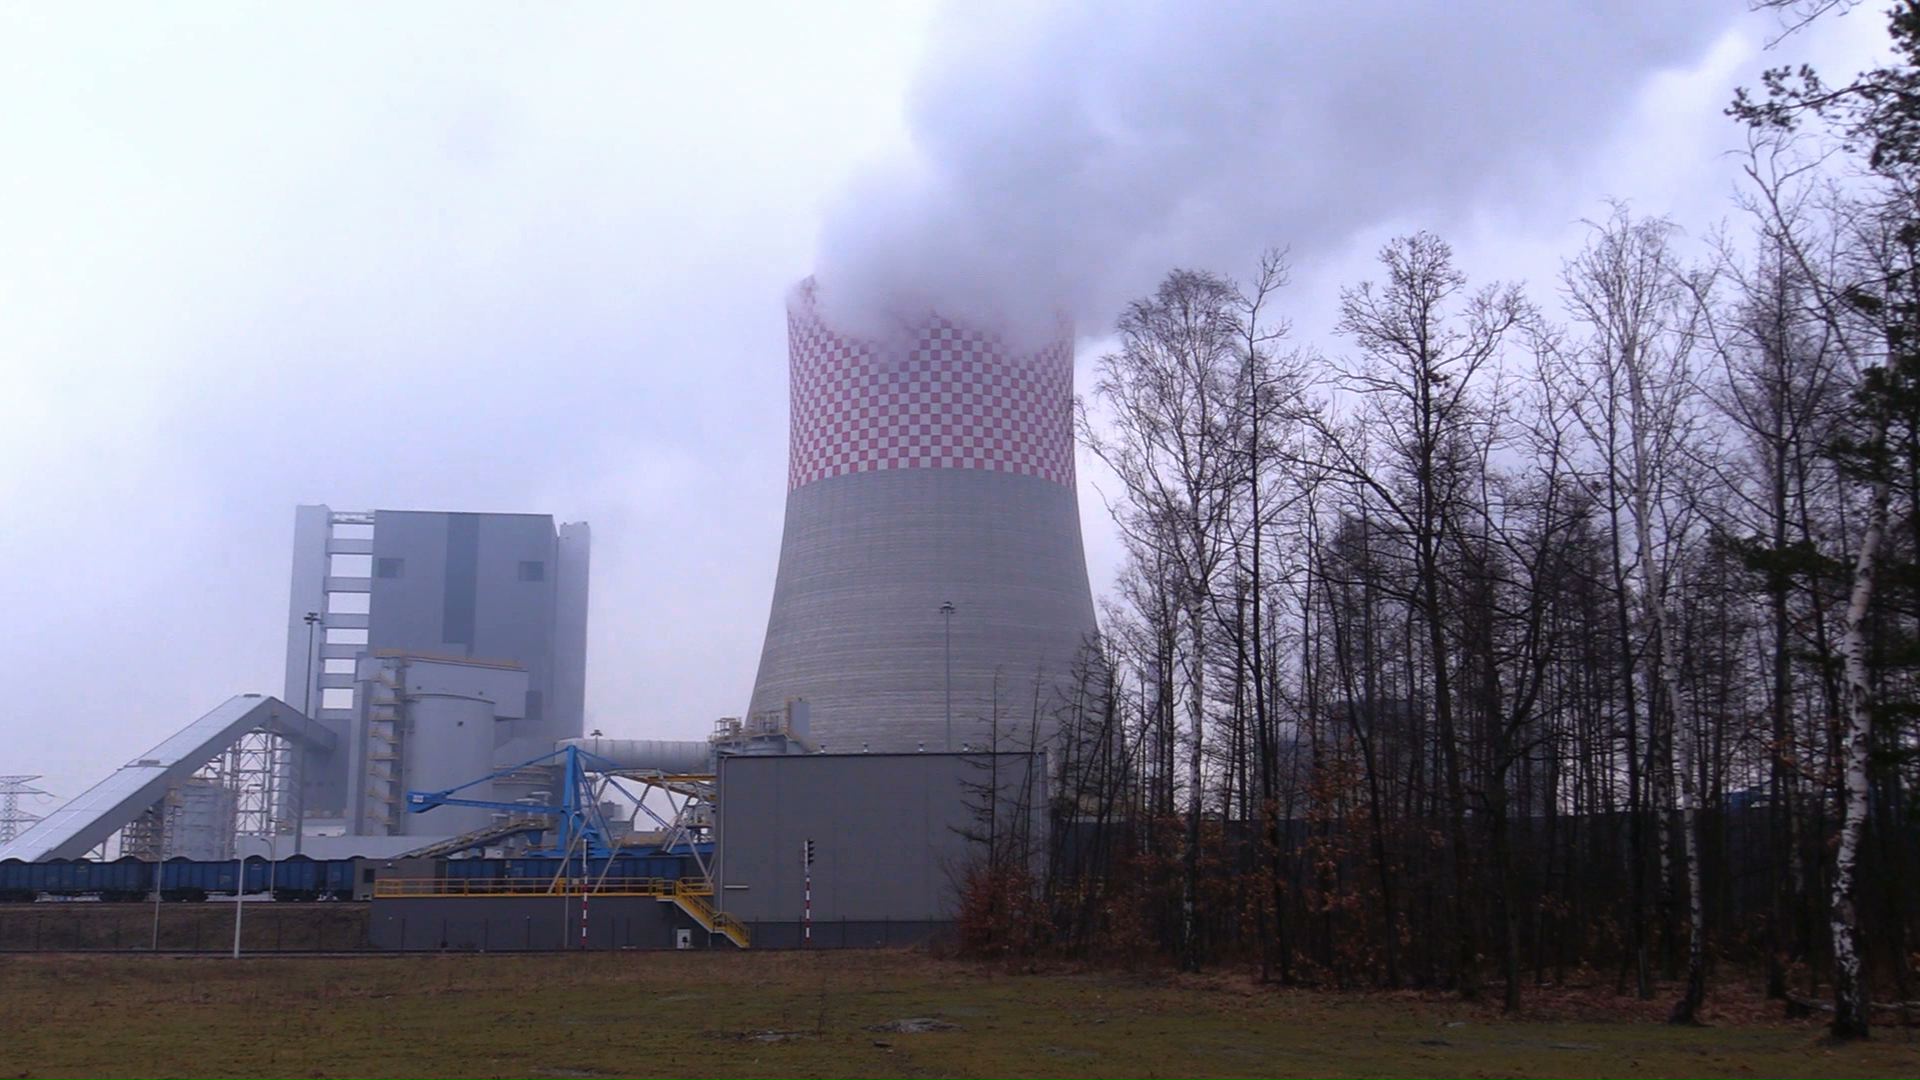 W Polsce może powstać aż 6 bloków jądrowych! Gdzie zbudują elektrownie atomowe w Polsce?